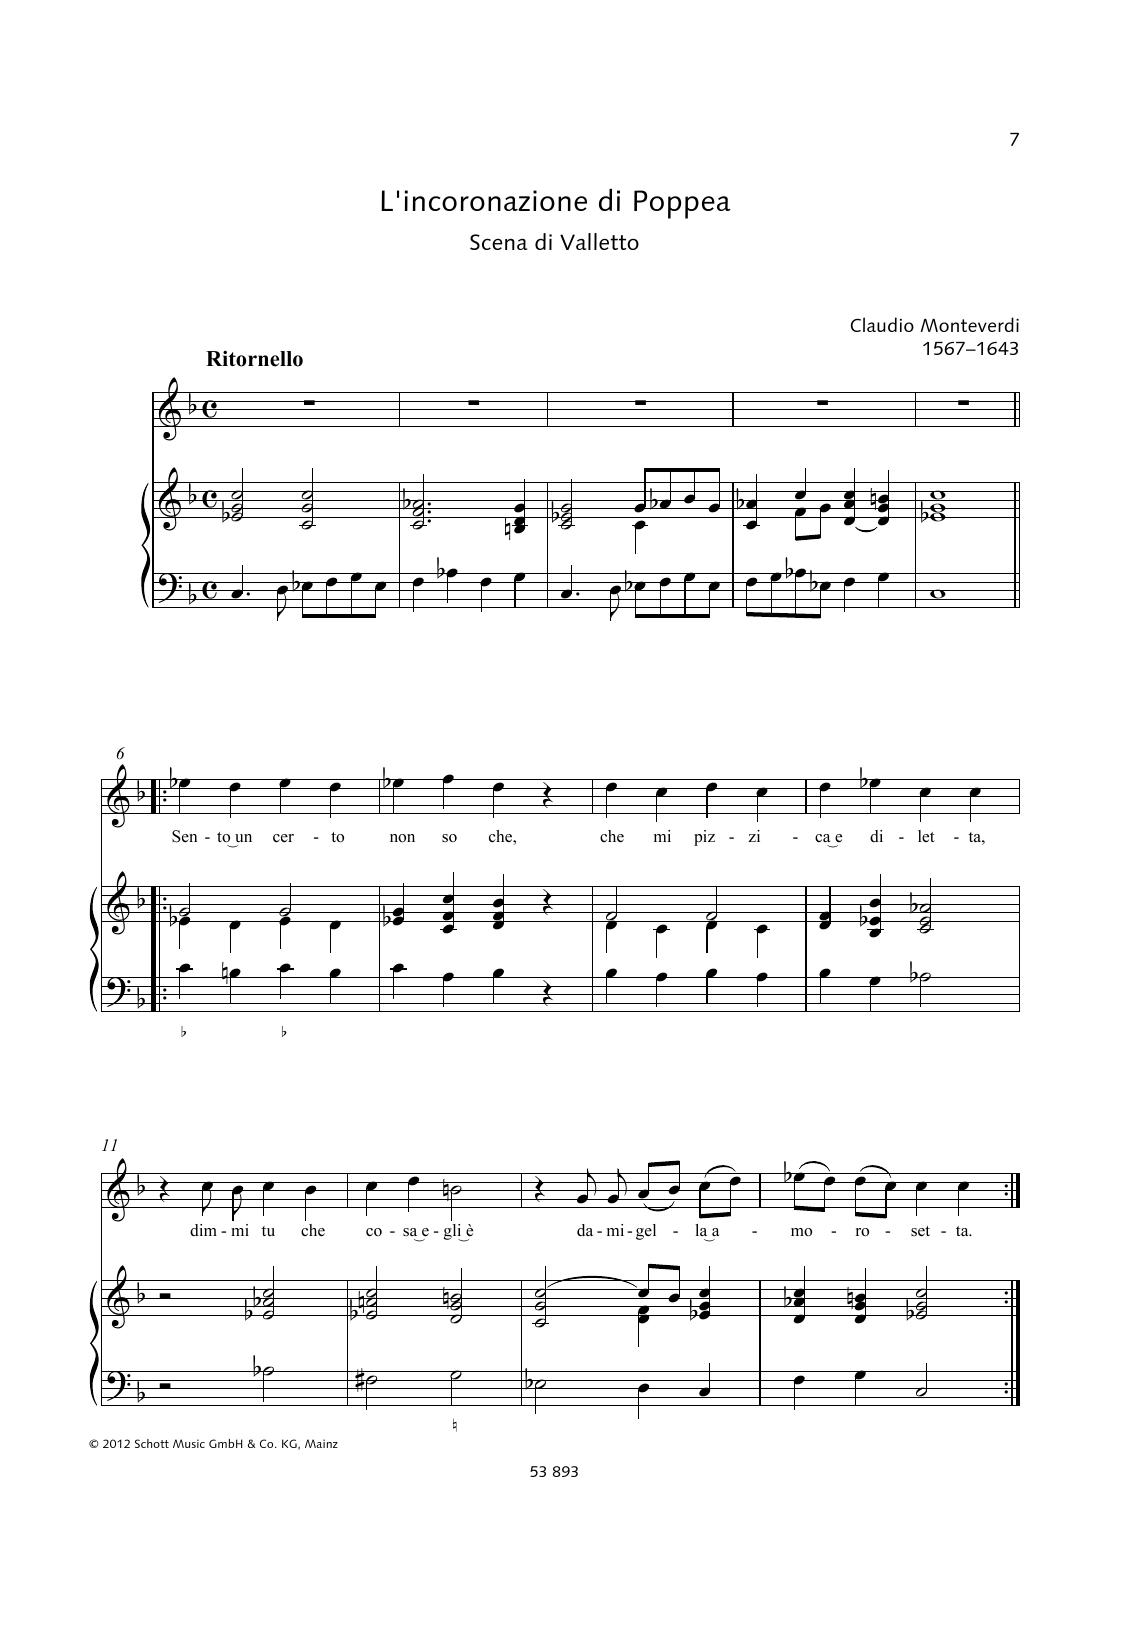 Claudio Monteverdi Sento un certo non so che sheet music notes and chords arranged for Piano & Vocal